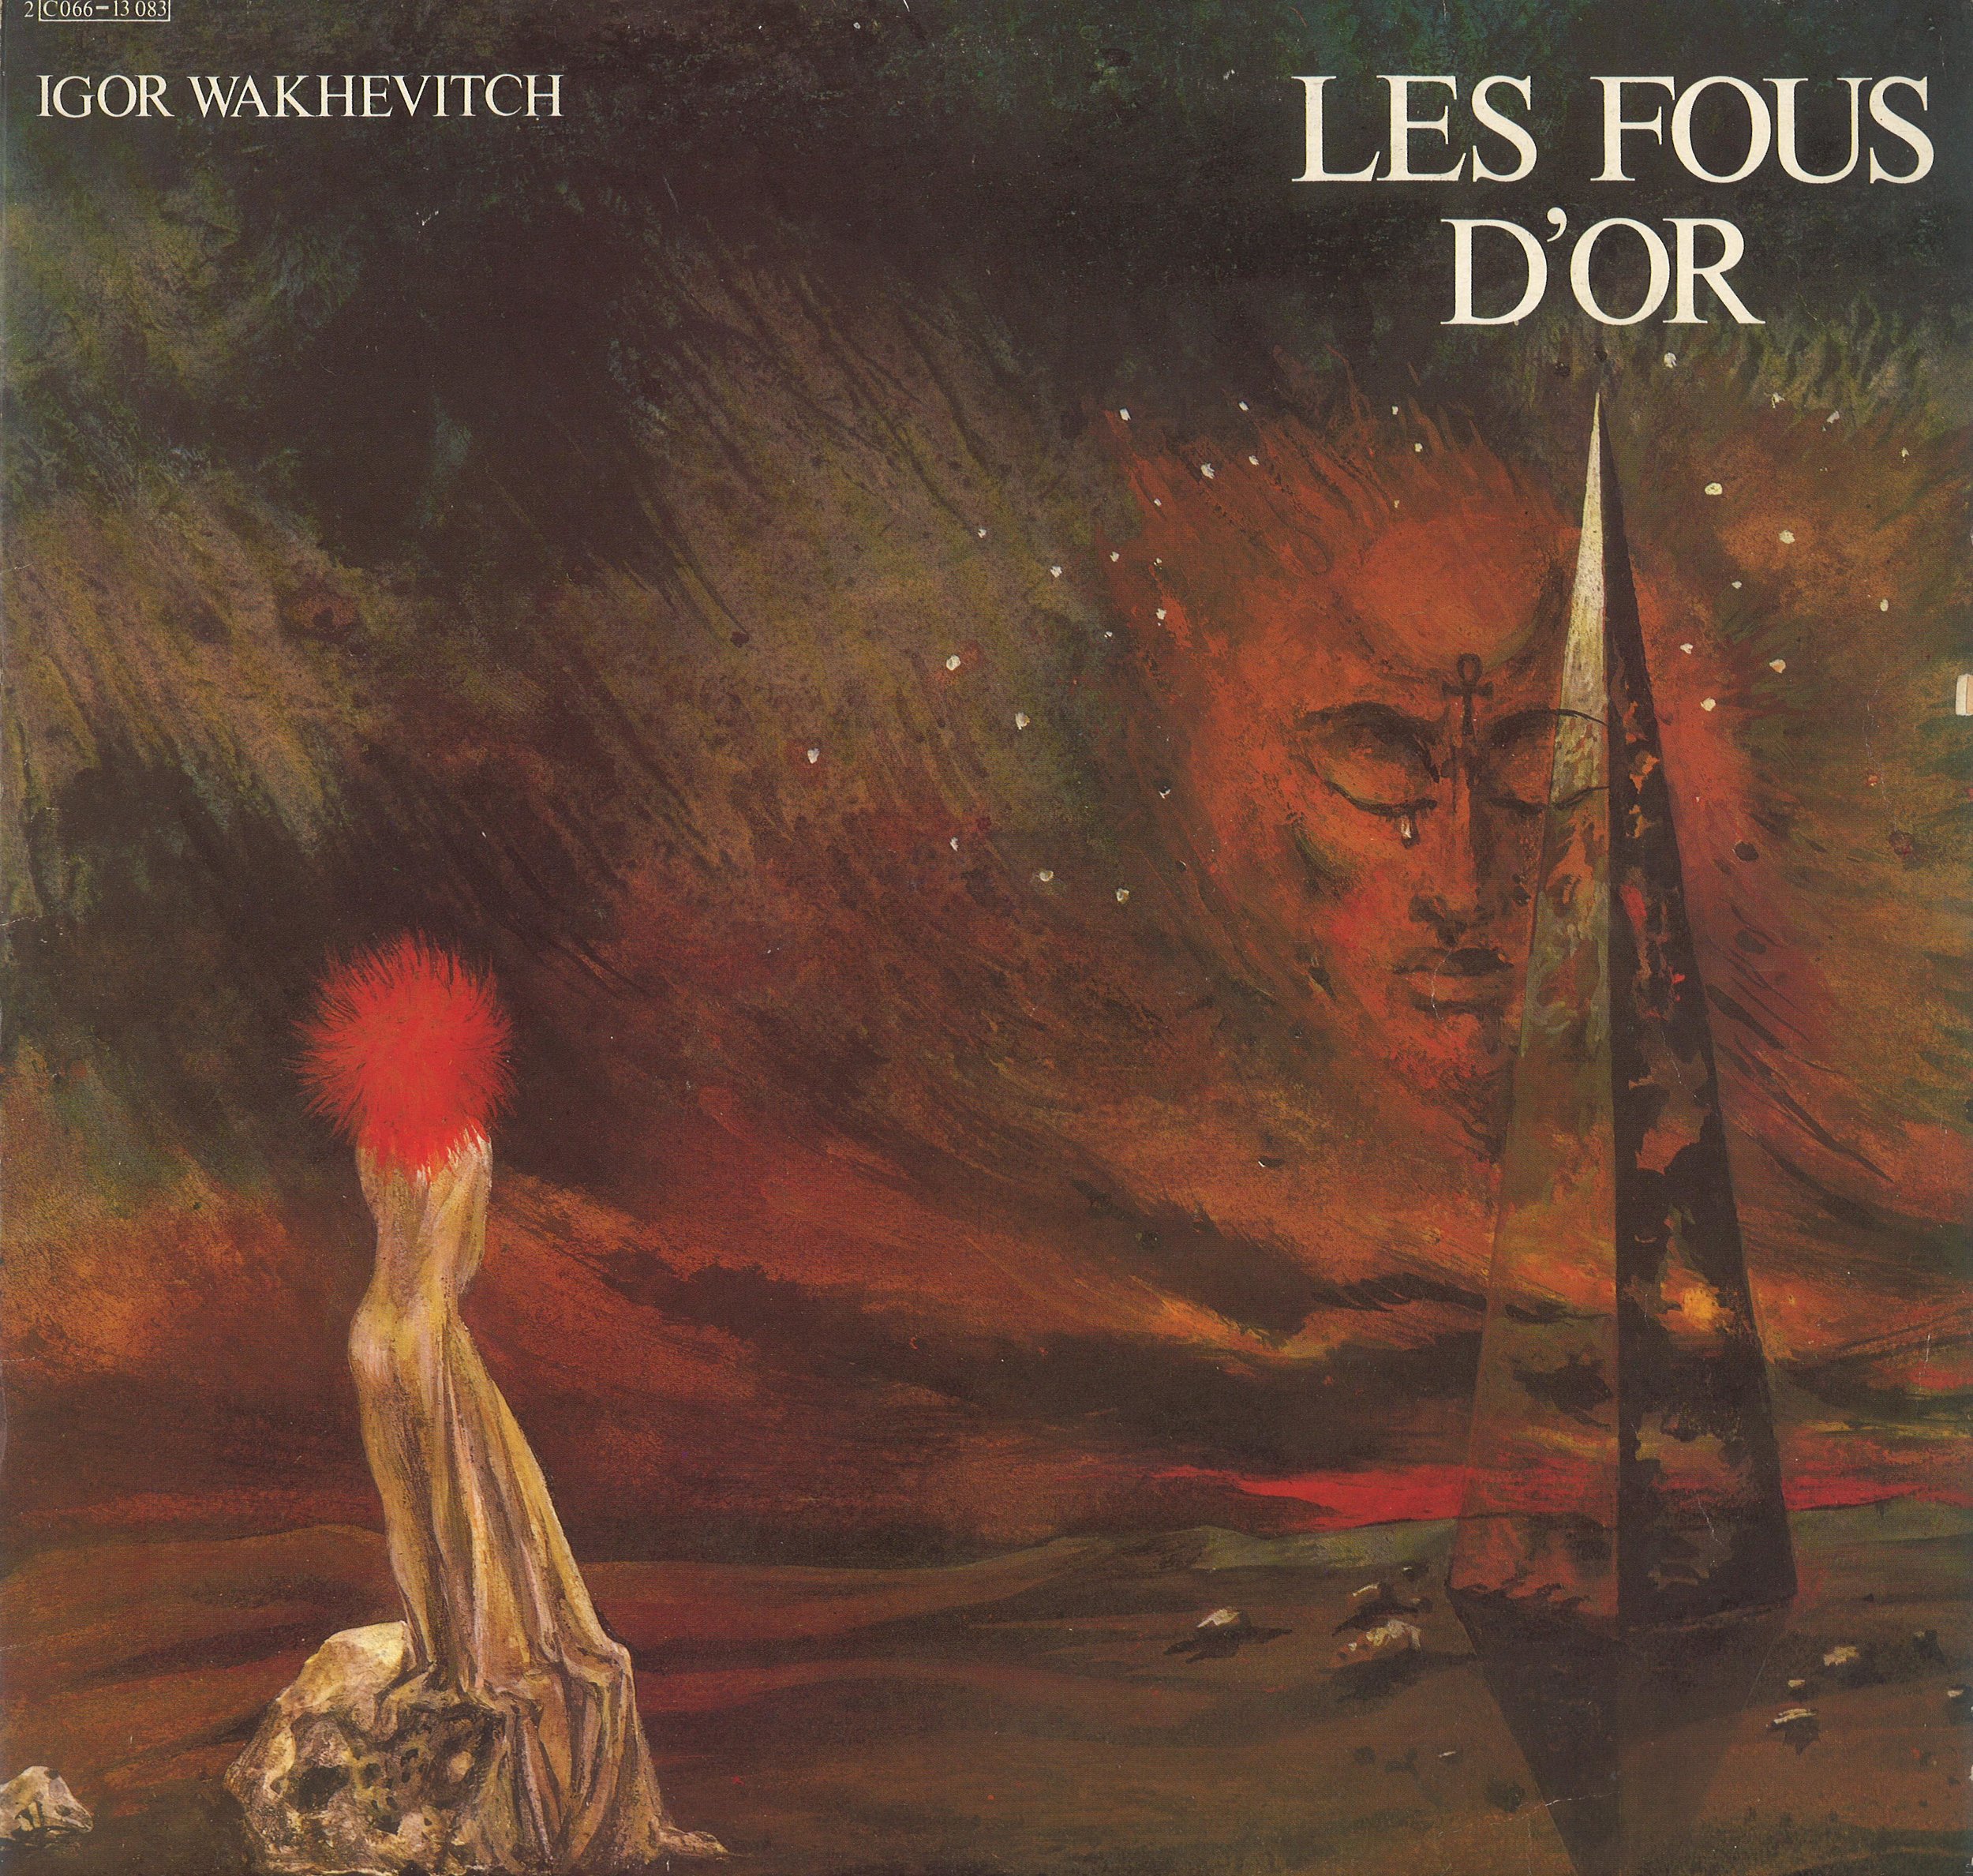 Cover of the album Les Fous d'Or jpg.jpg